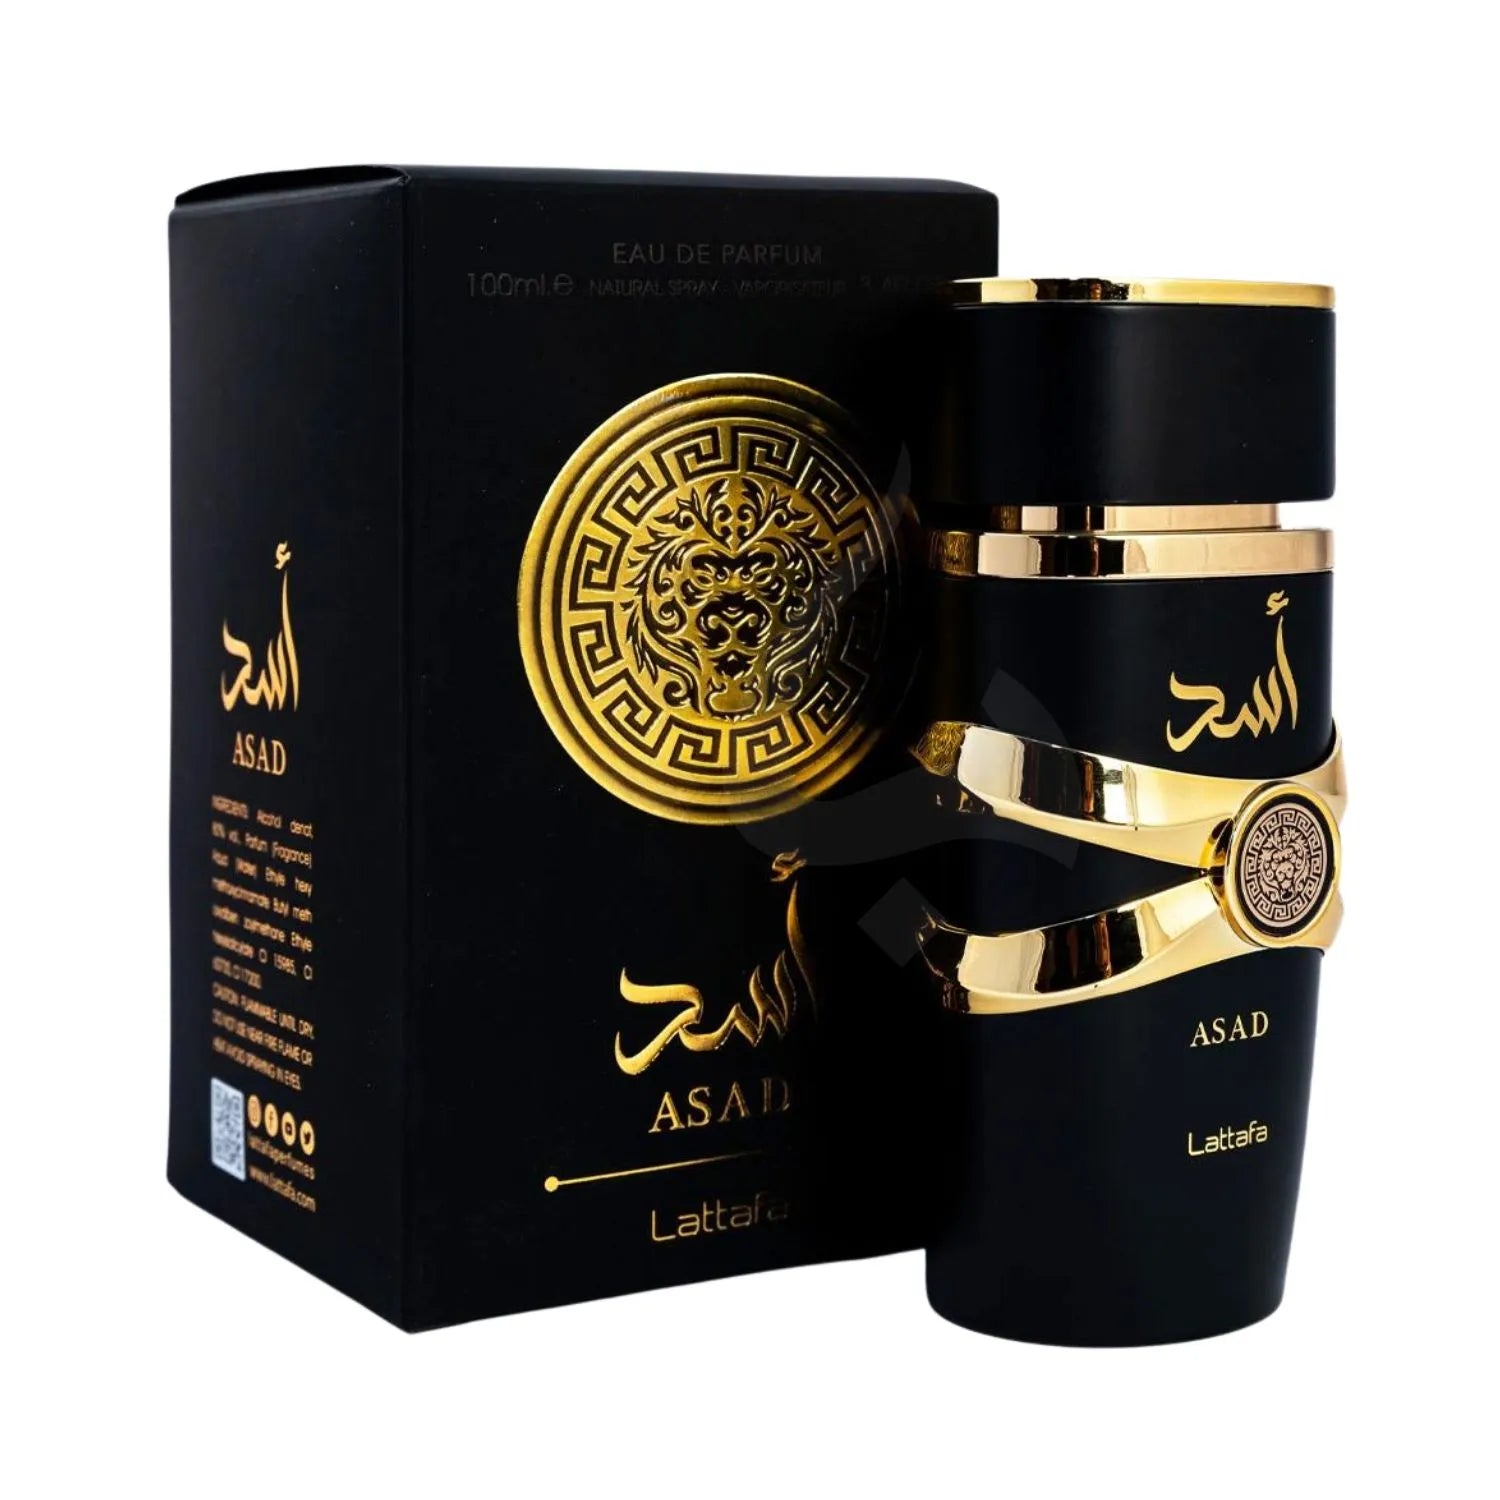 Asad Perfume Lattafa Box